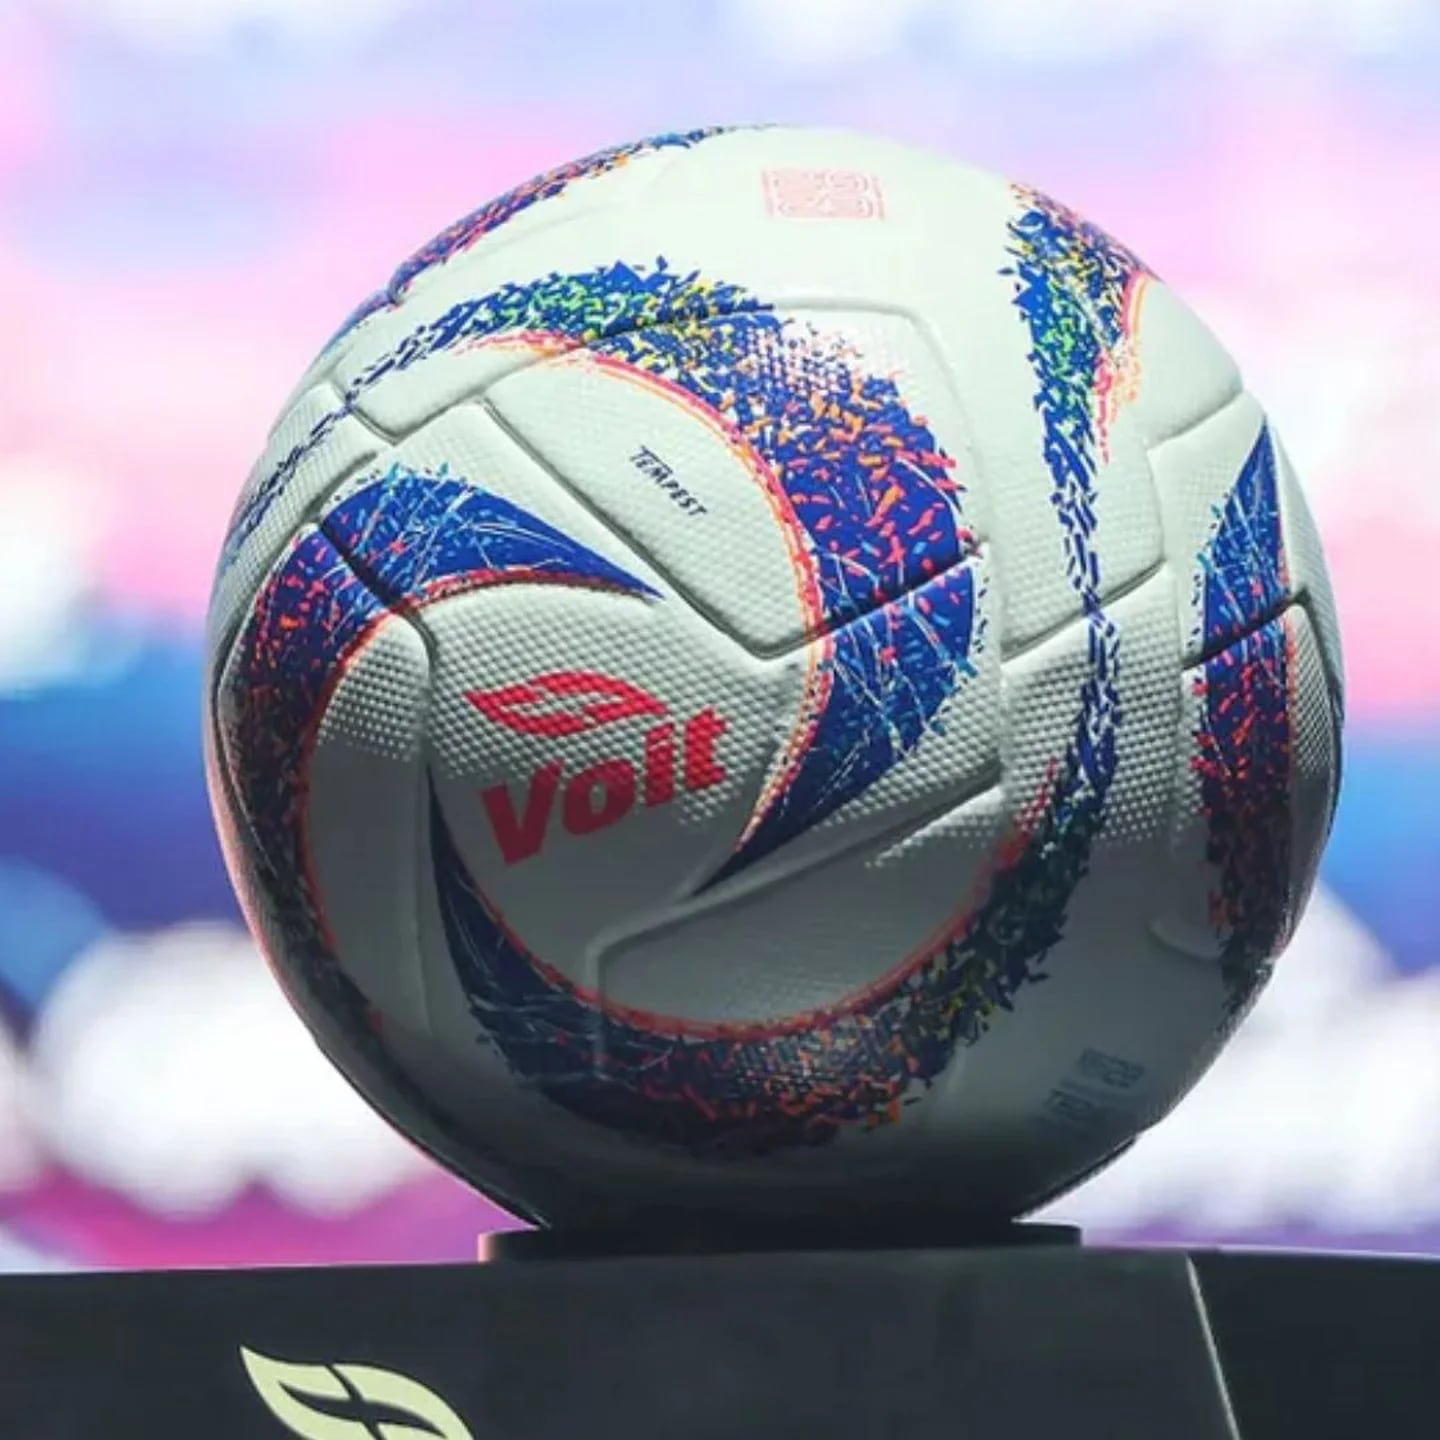 Sobre los balones de fútbol y lo que podrían simbolizar para los seguidores  de este deporte, Noticias hoy